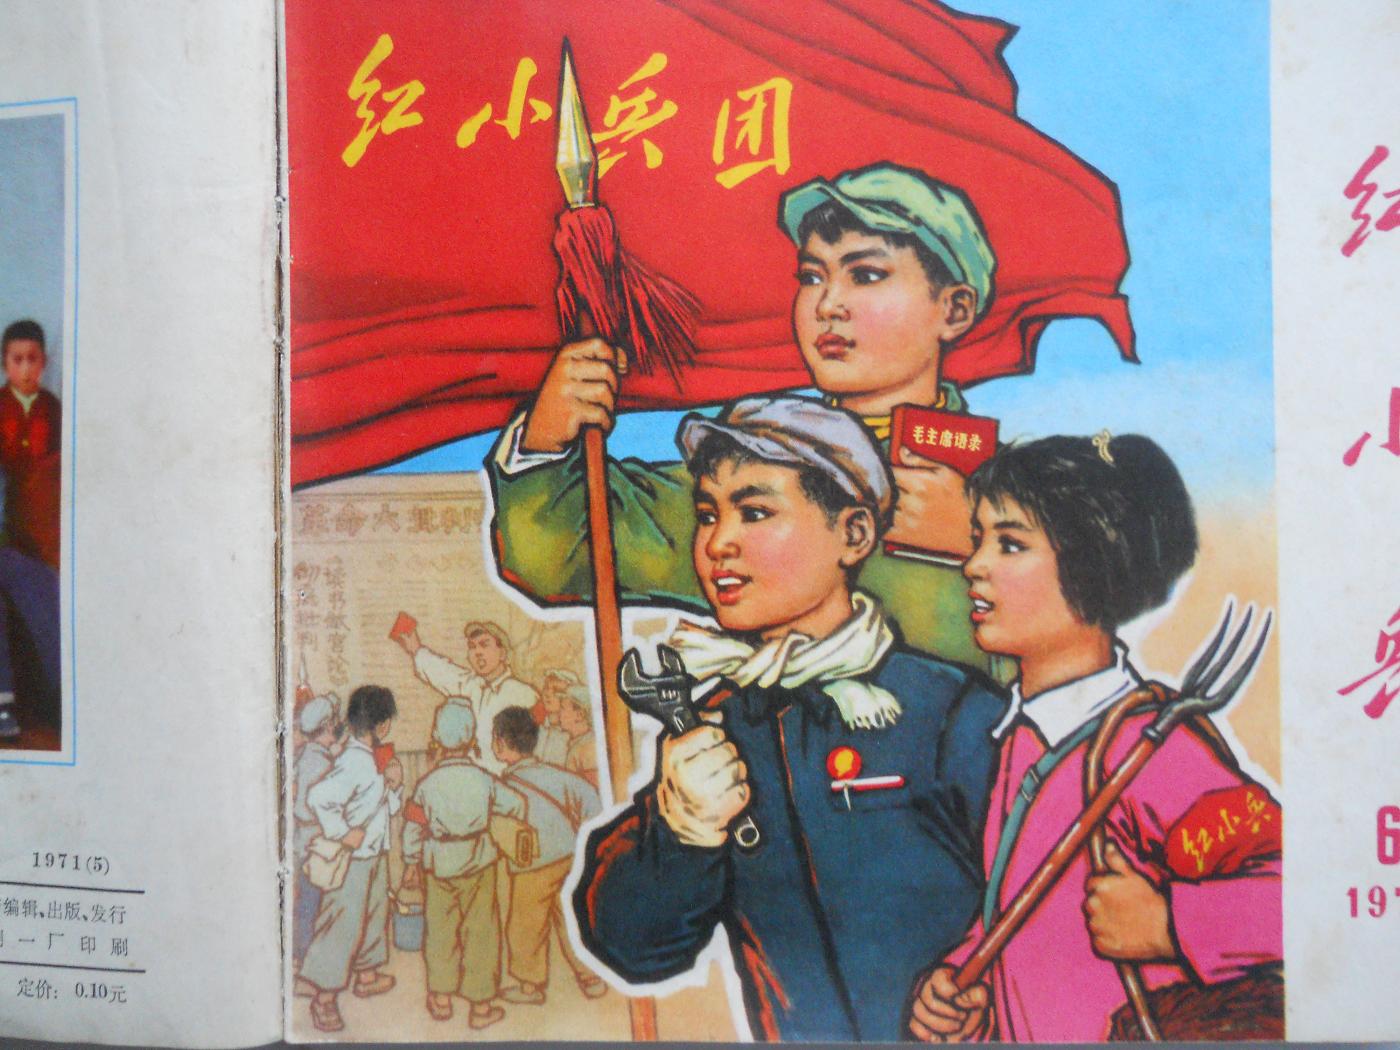 紅小兵(文化大革命時期的學生組織)